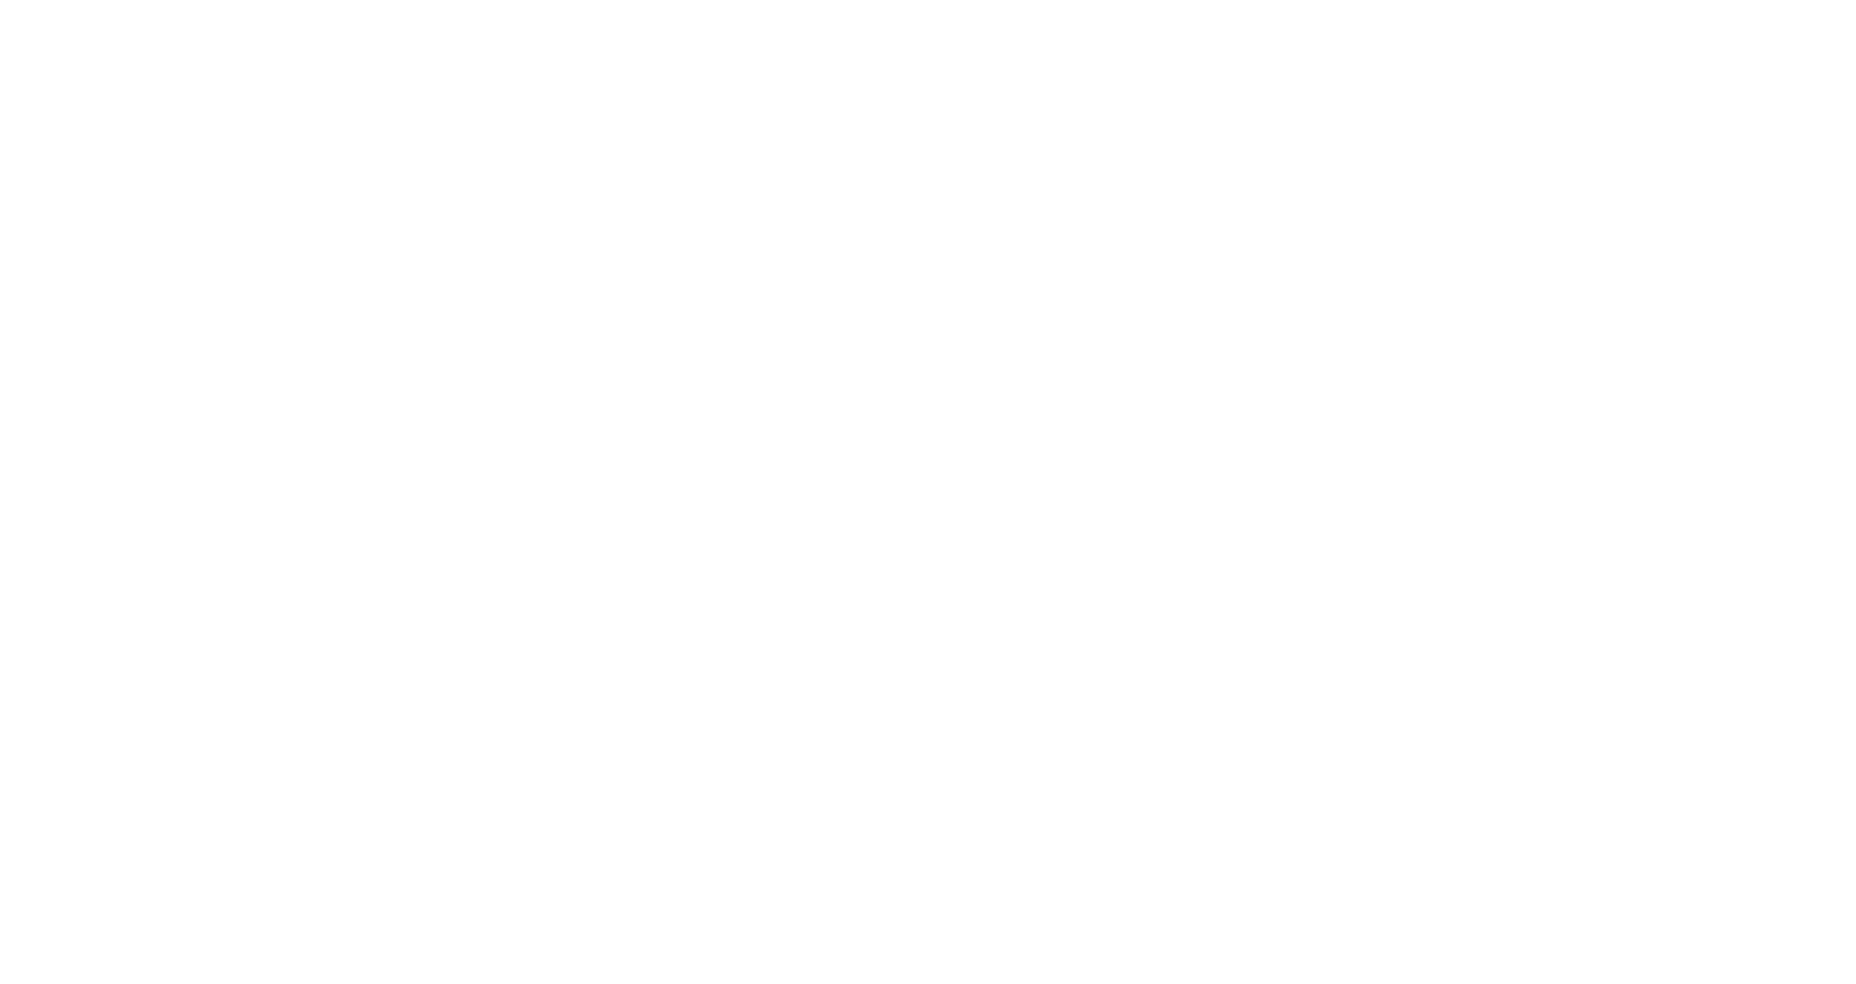 HAPPY MOTHER'S EVERYDAY